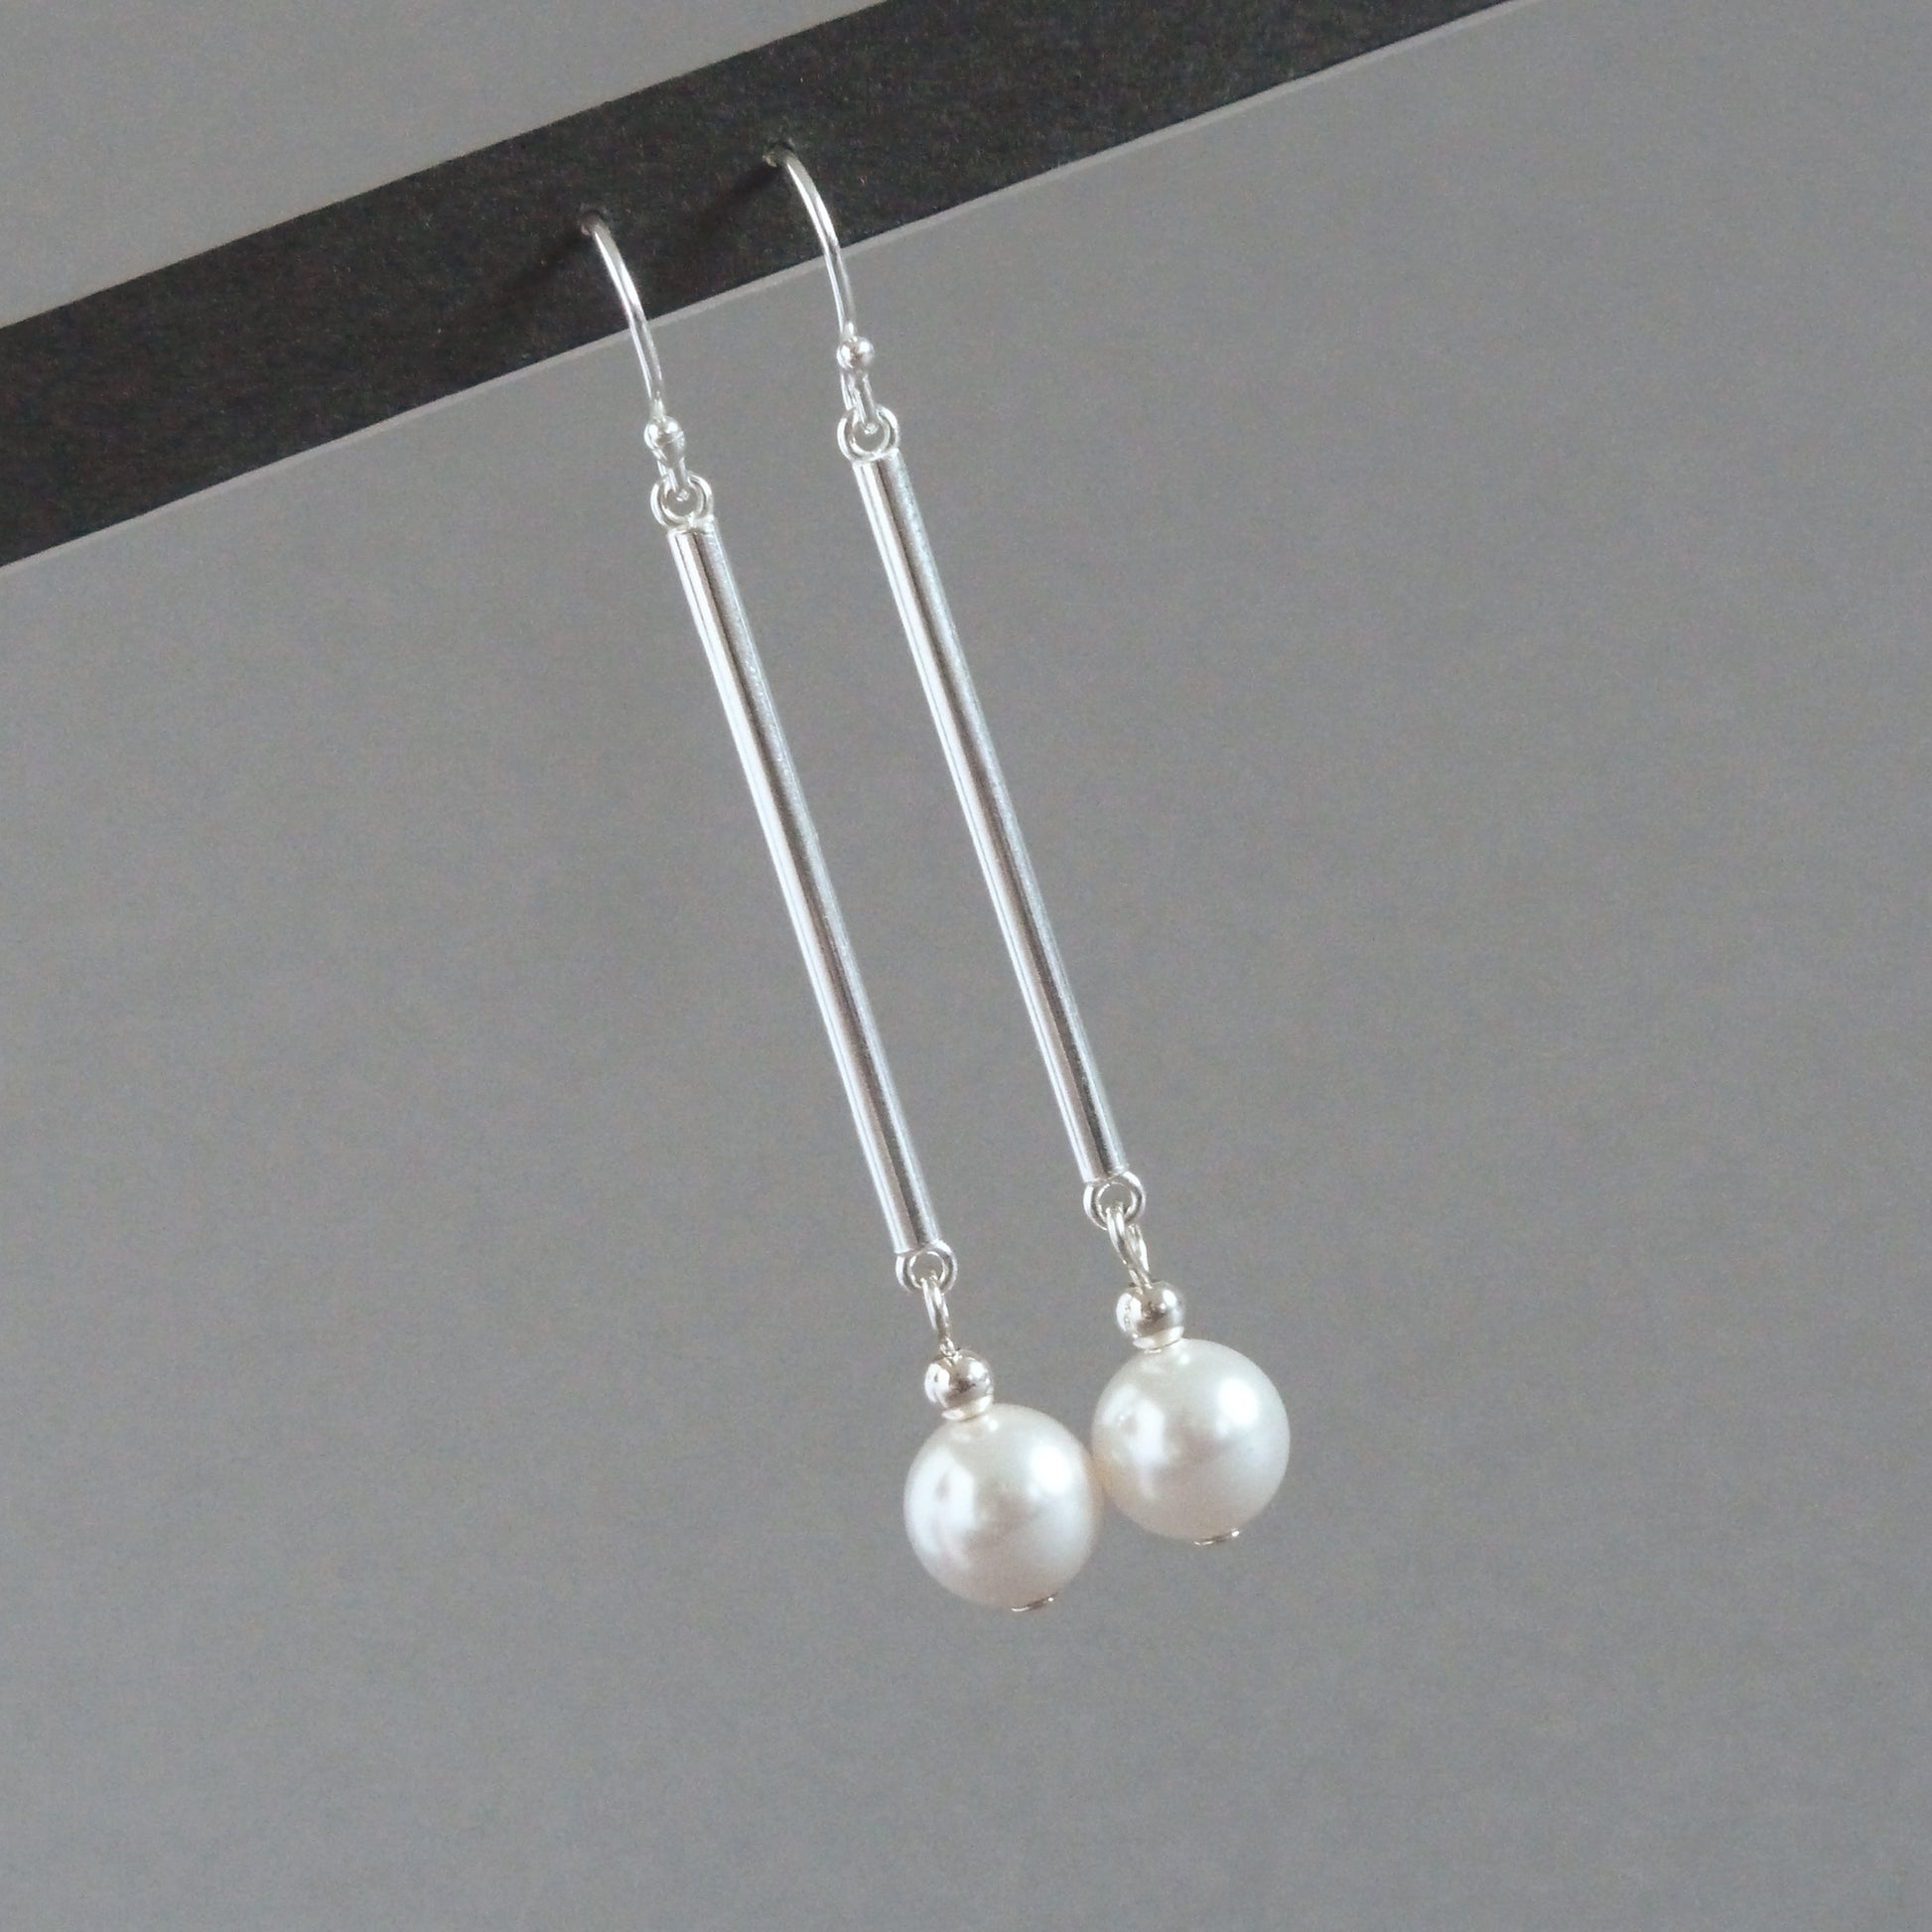 Long white pearl drop earrings